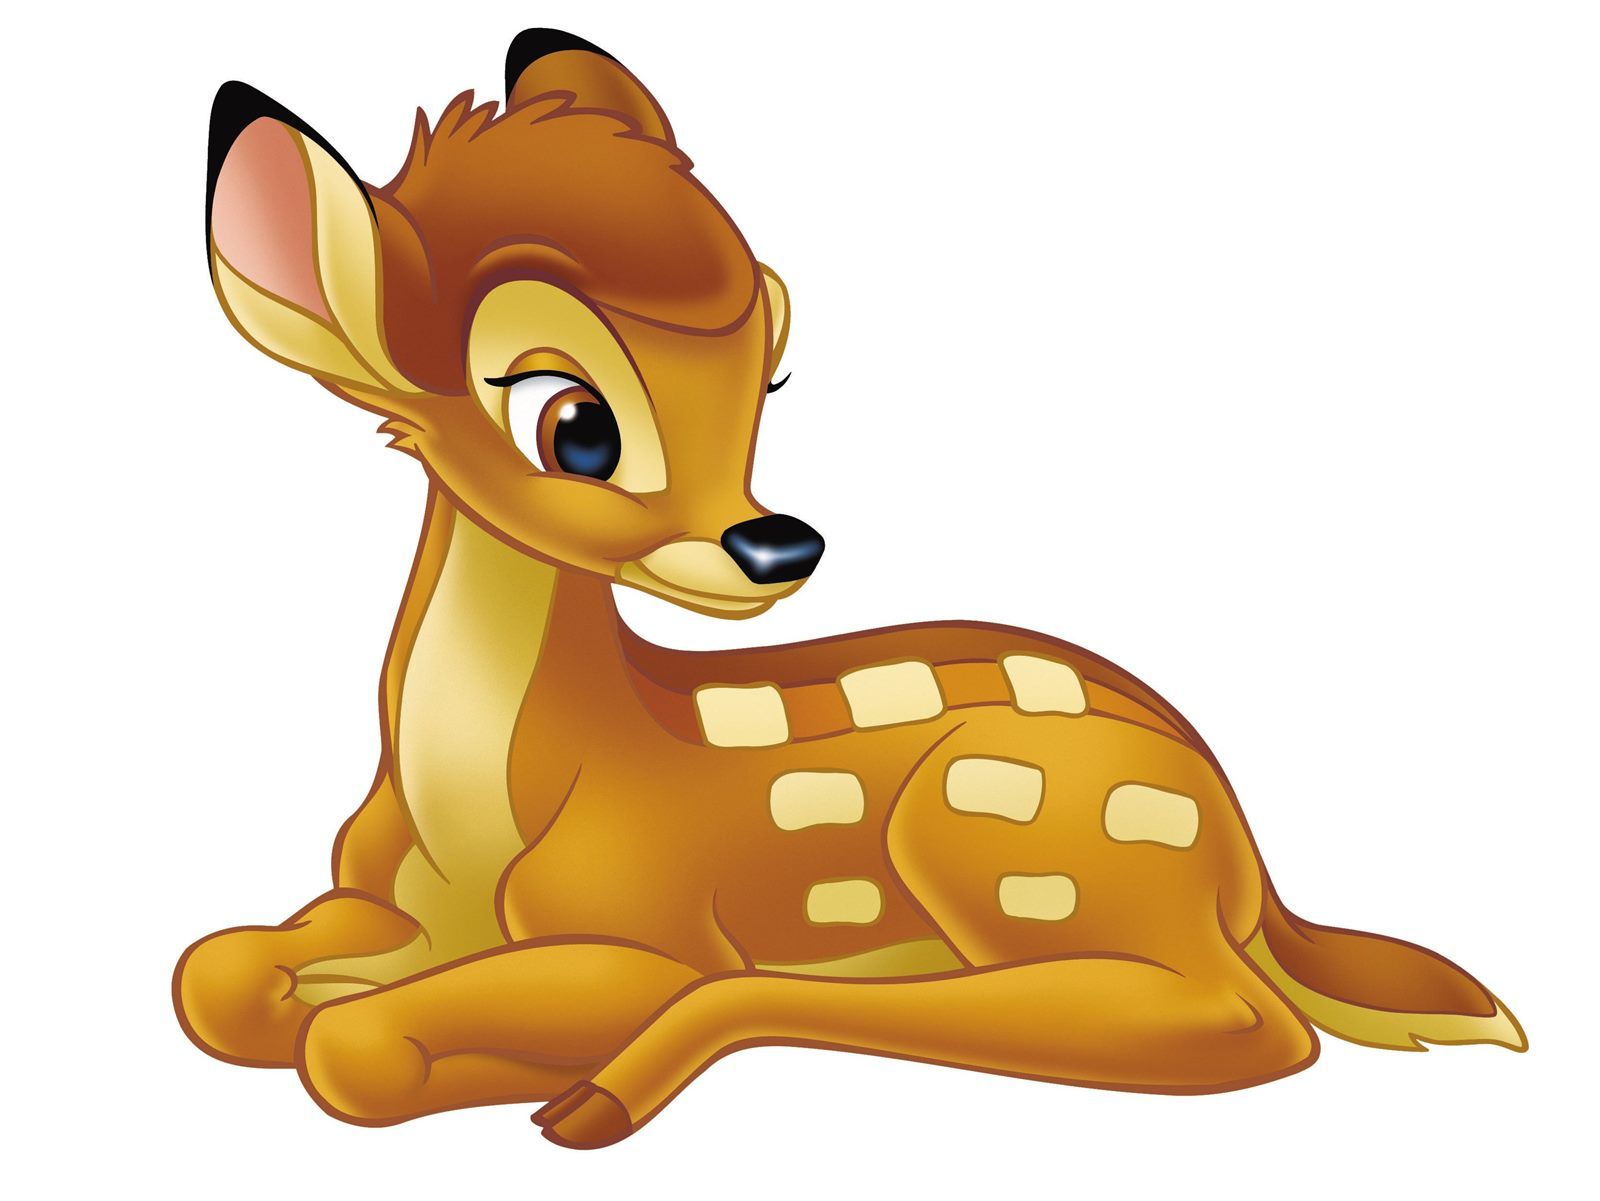 Cartoon Image Of Baby Deer Wallpaper